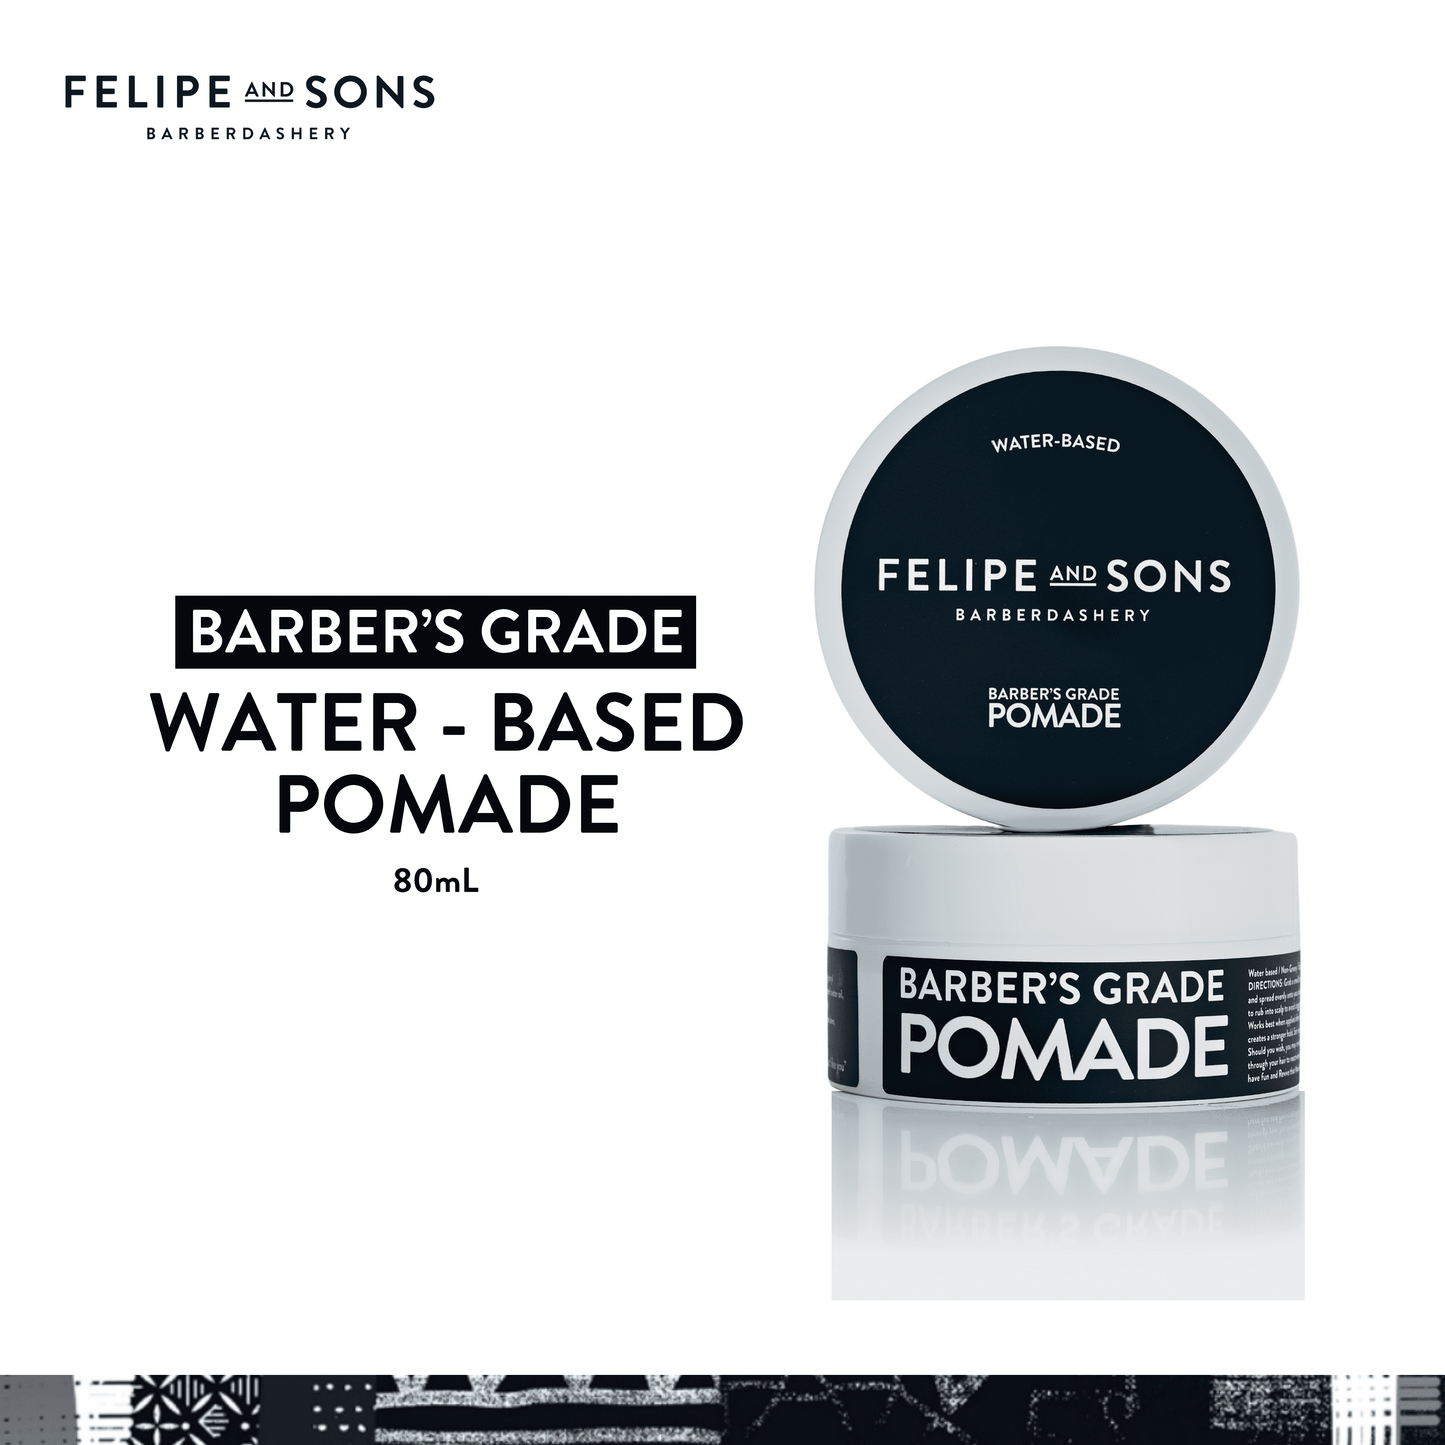 Felipe and Sons Barber’s Grade Pomade (Water-Based) 80g